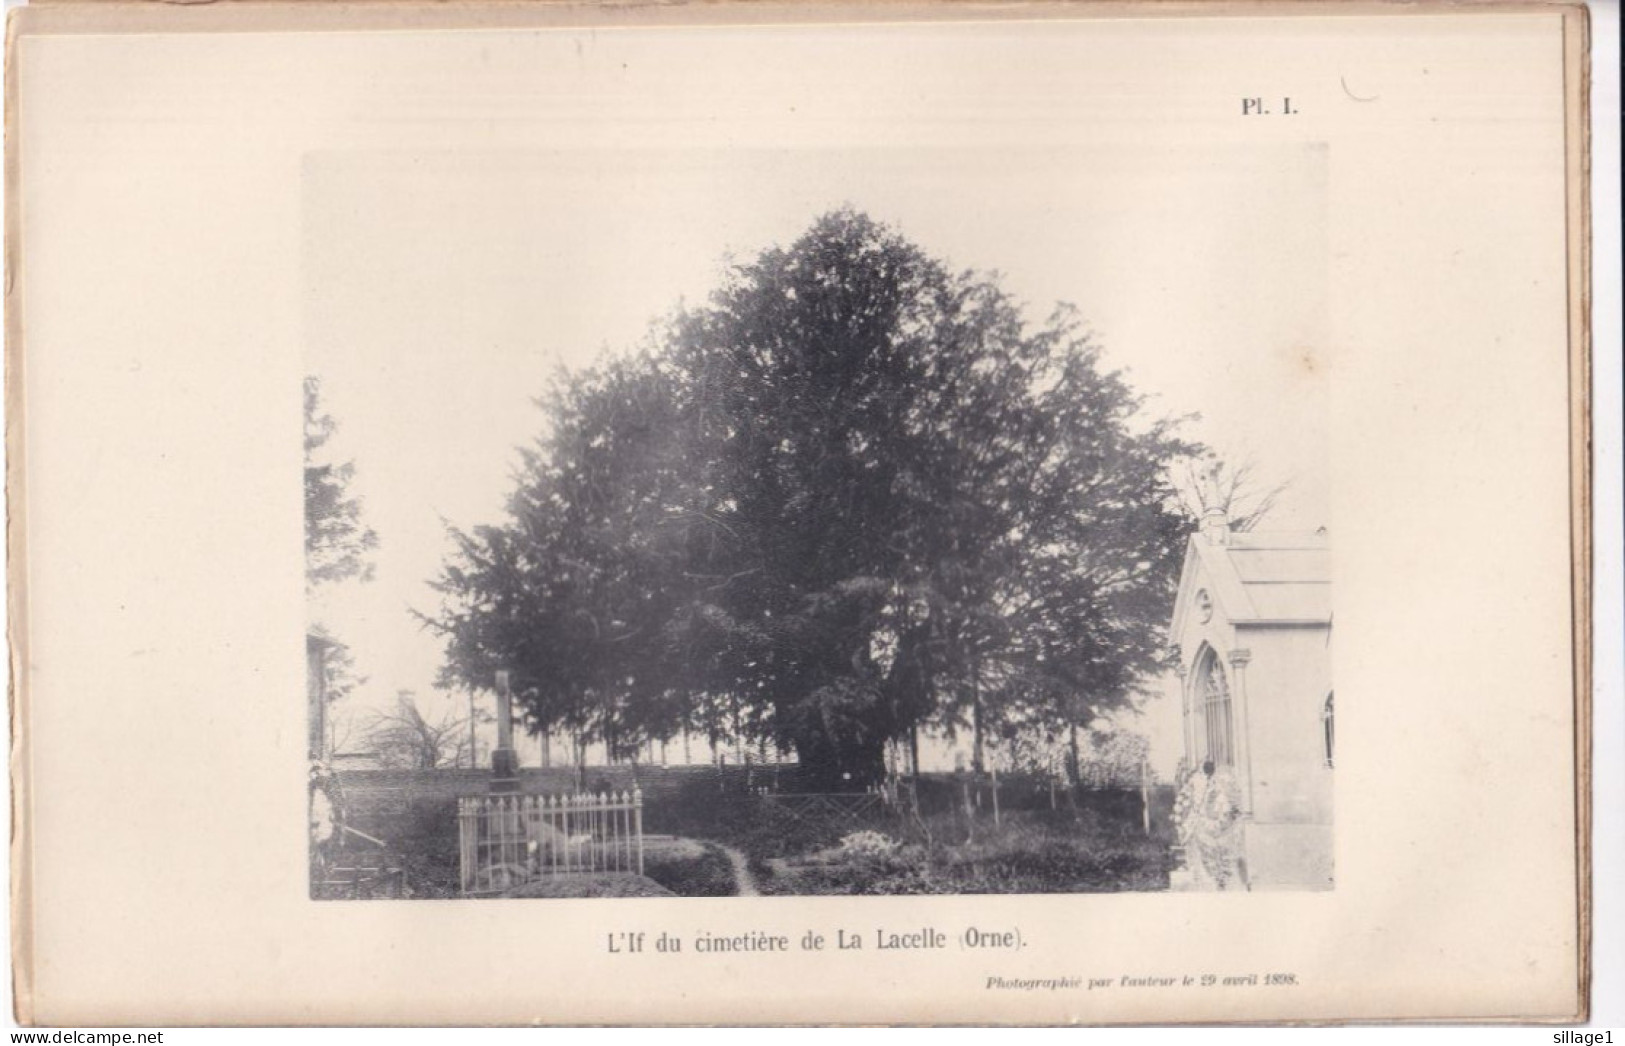 La Lacelle (Orne 61) L'If Di Cimetière De La Lacelle (Orne) - Planche - Photographié Le 29 Avril 1898 - Other Plans